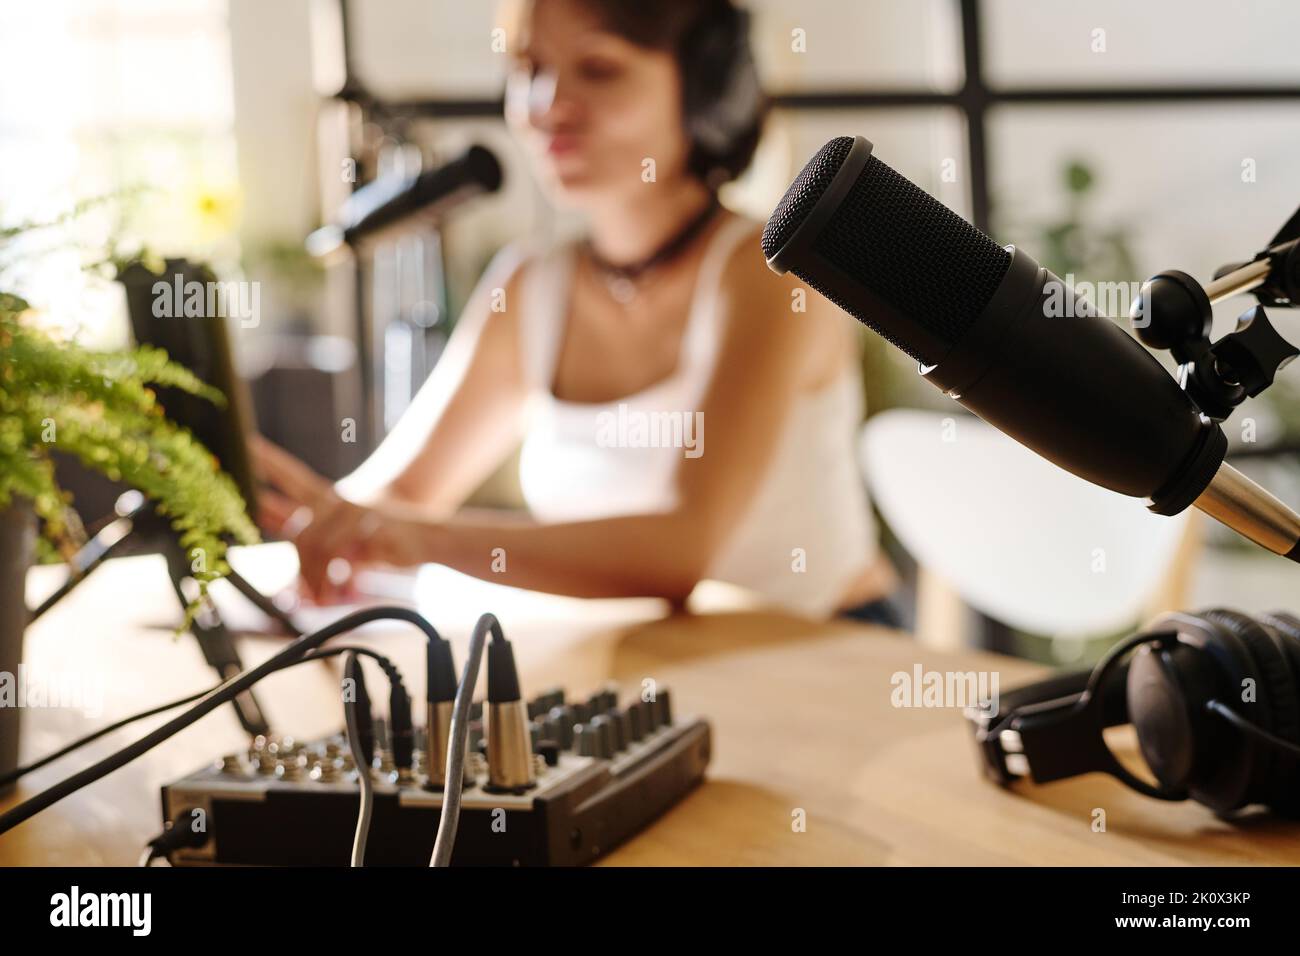 Schwarzes Mikrofon und andere Ausrüstung für die Aufnahme von Audiodateien für Podcasting am Arbeitsplatz des Gastgebers mit Mädchen auf dem Hintergrund Stockfoto